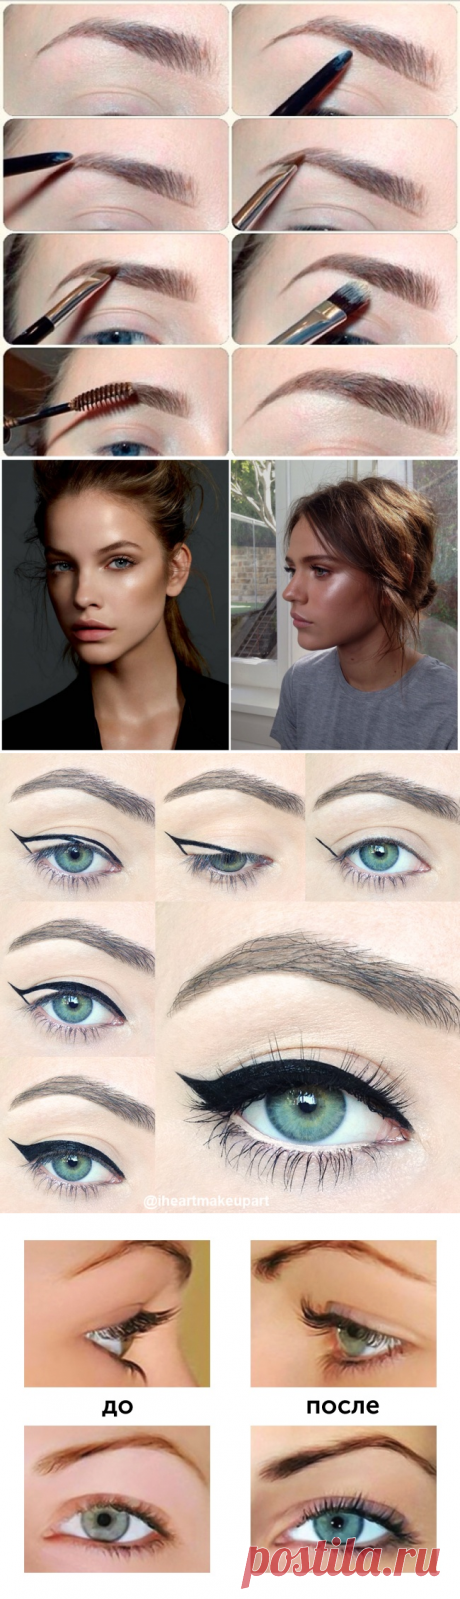 8 секретов макияжа, как сделать глаза выразительными